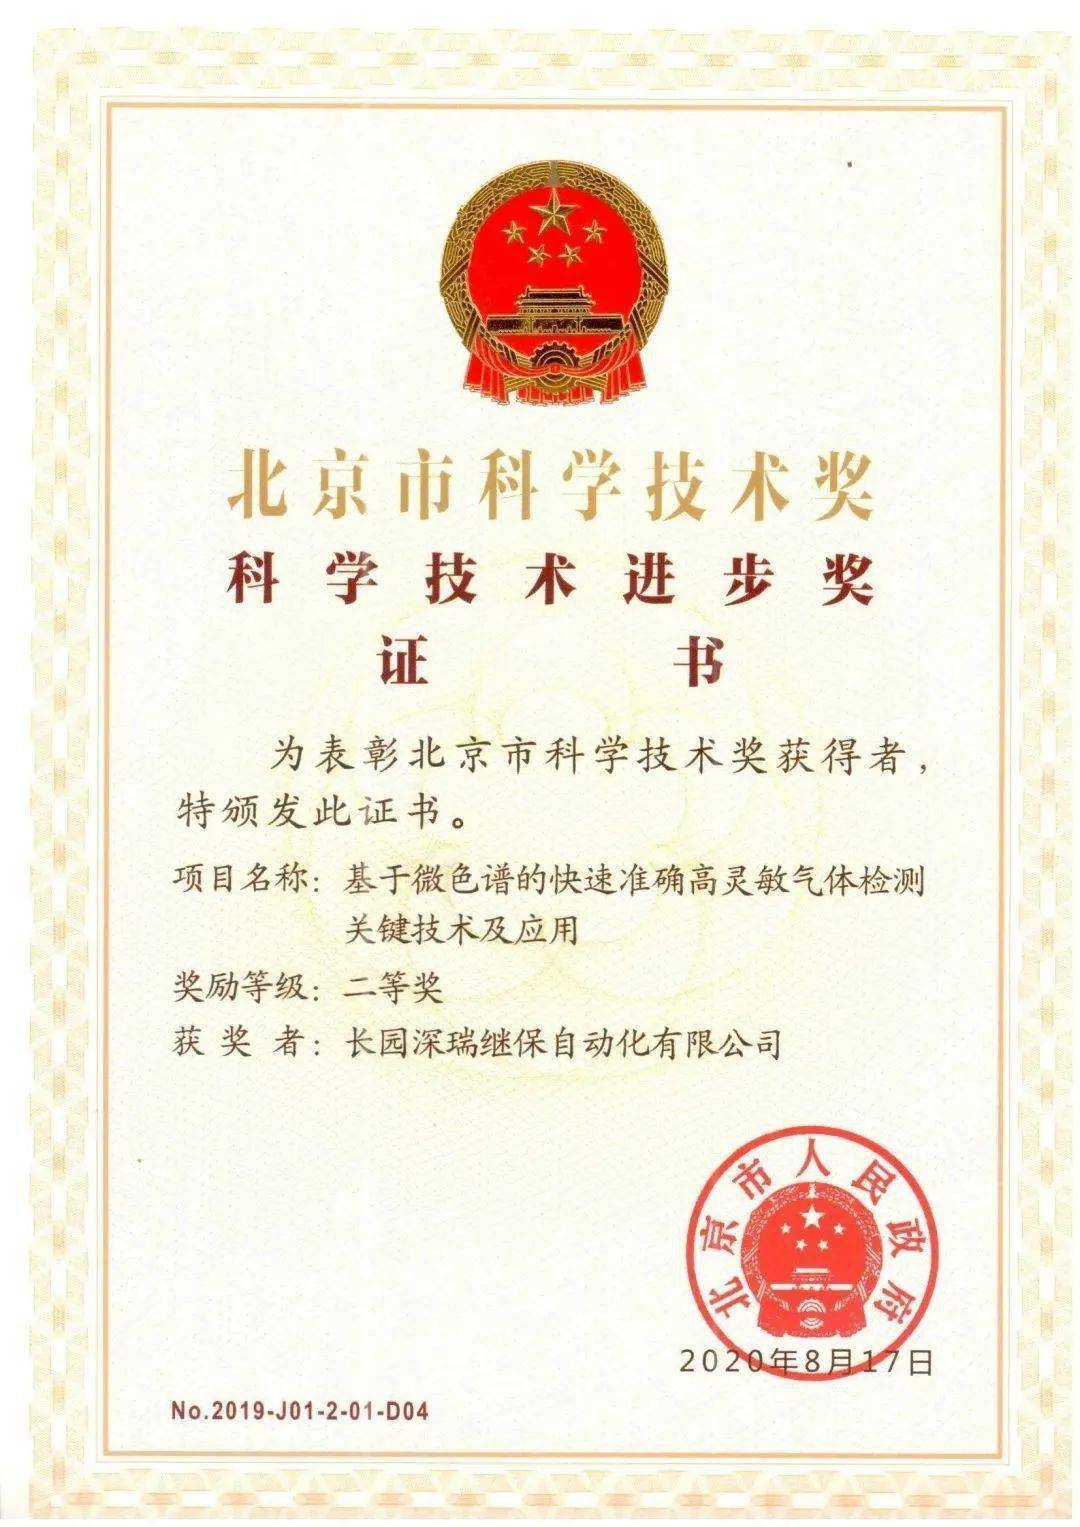 195项成果BOB盘口获2017年度北京科技奖